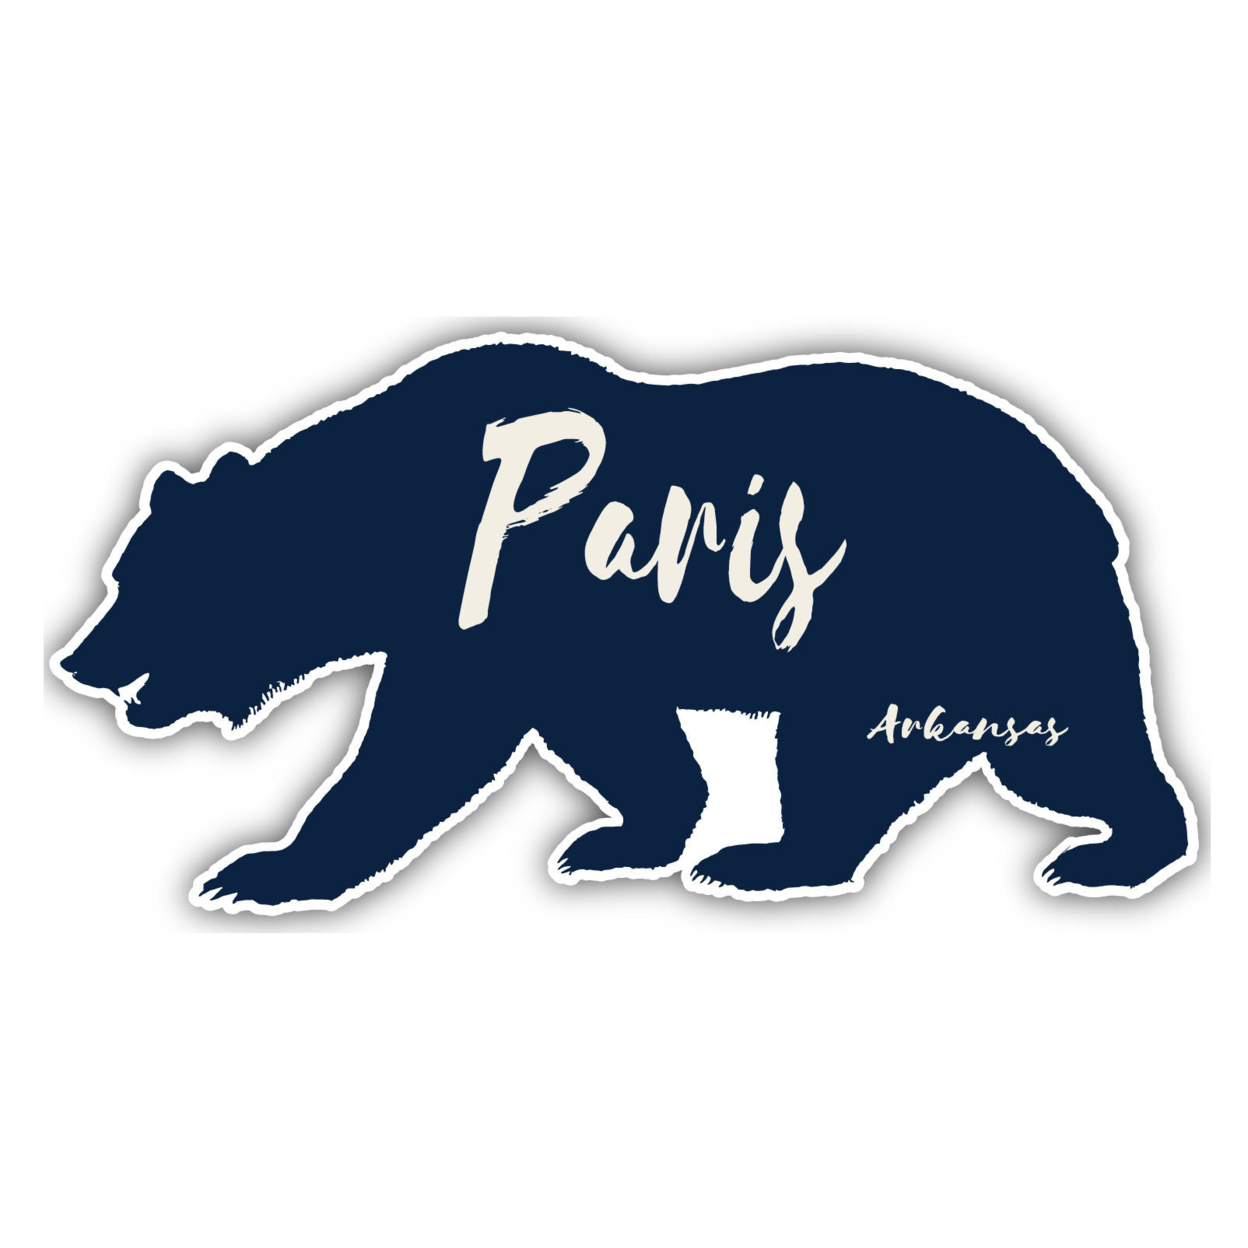 Paris Arkansas Souvenir Decorative Stickers (Choose Theme And Size) - Single Unit, 2-Inch, Bear